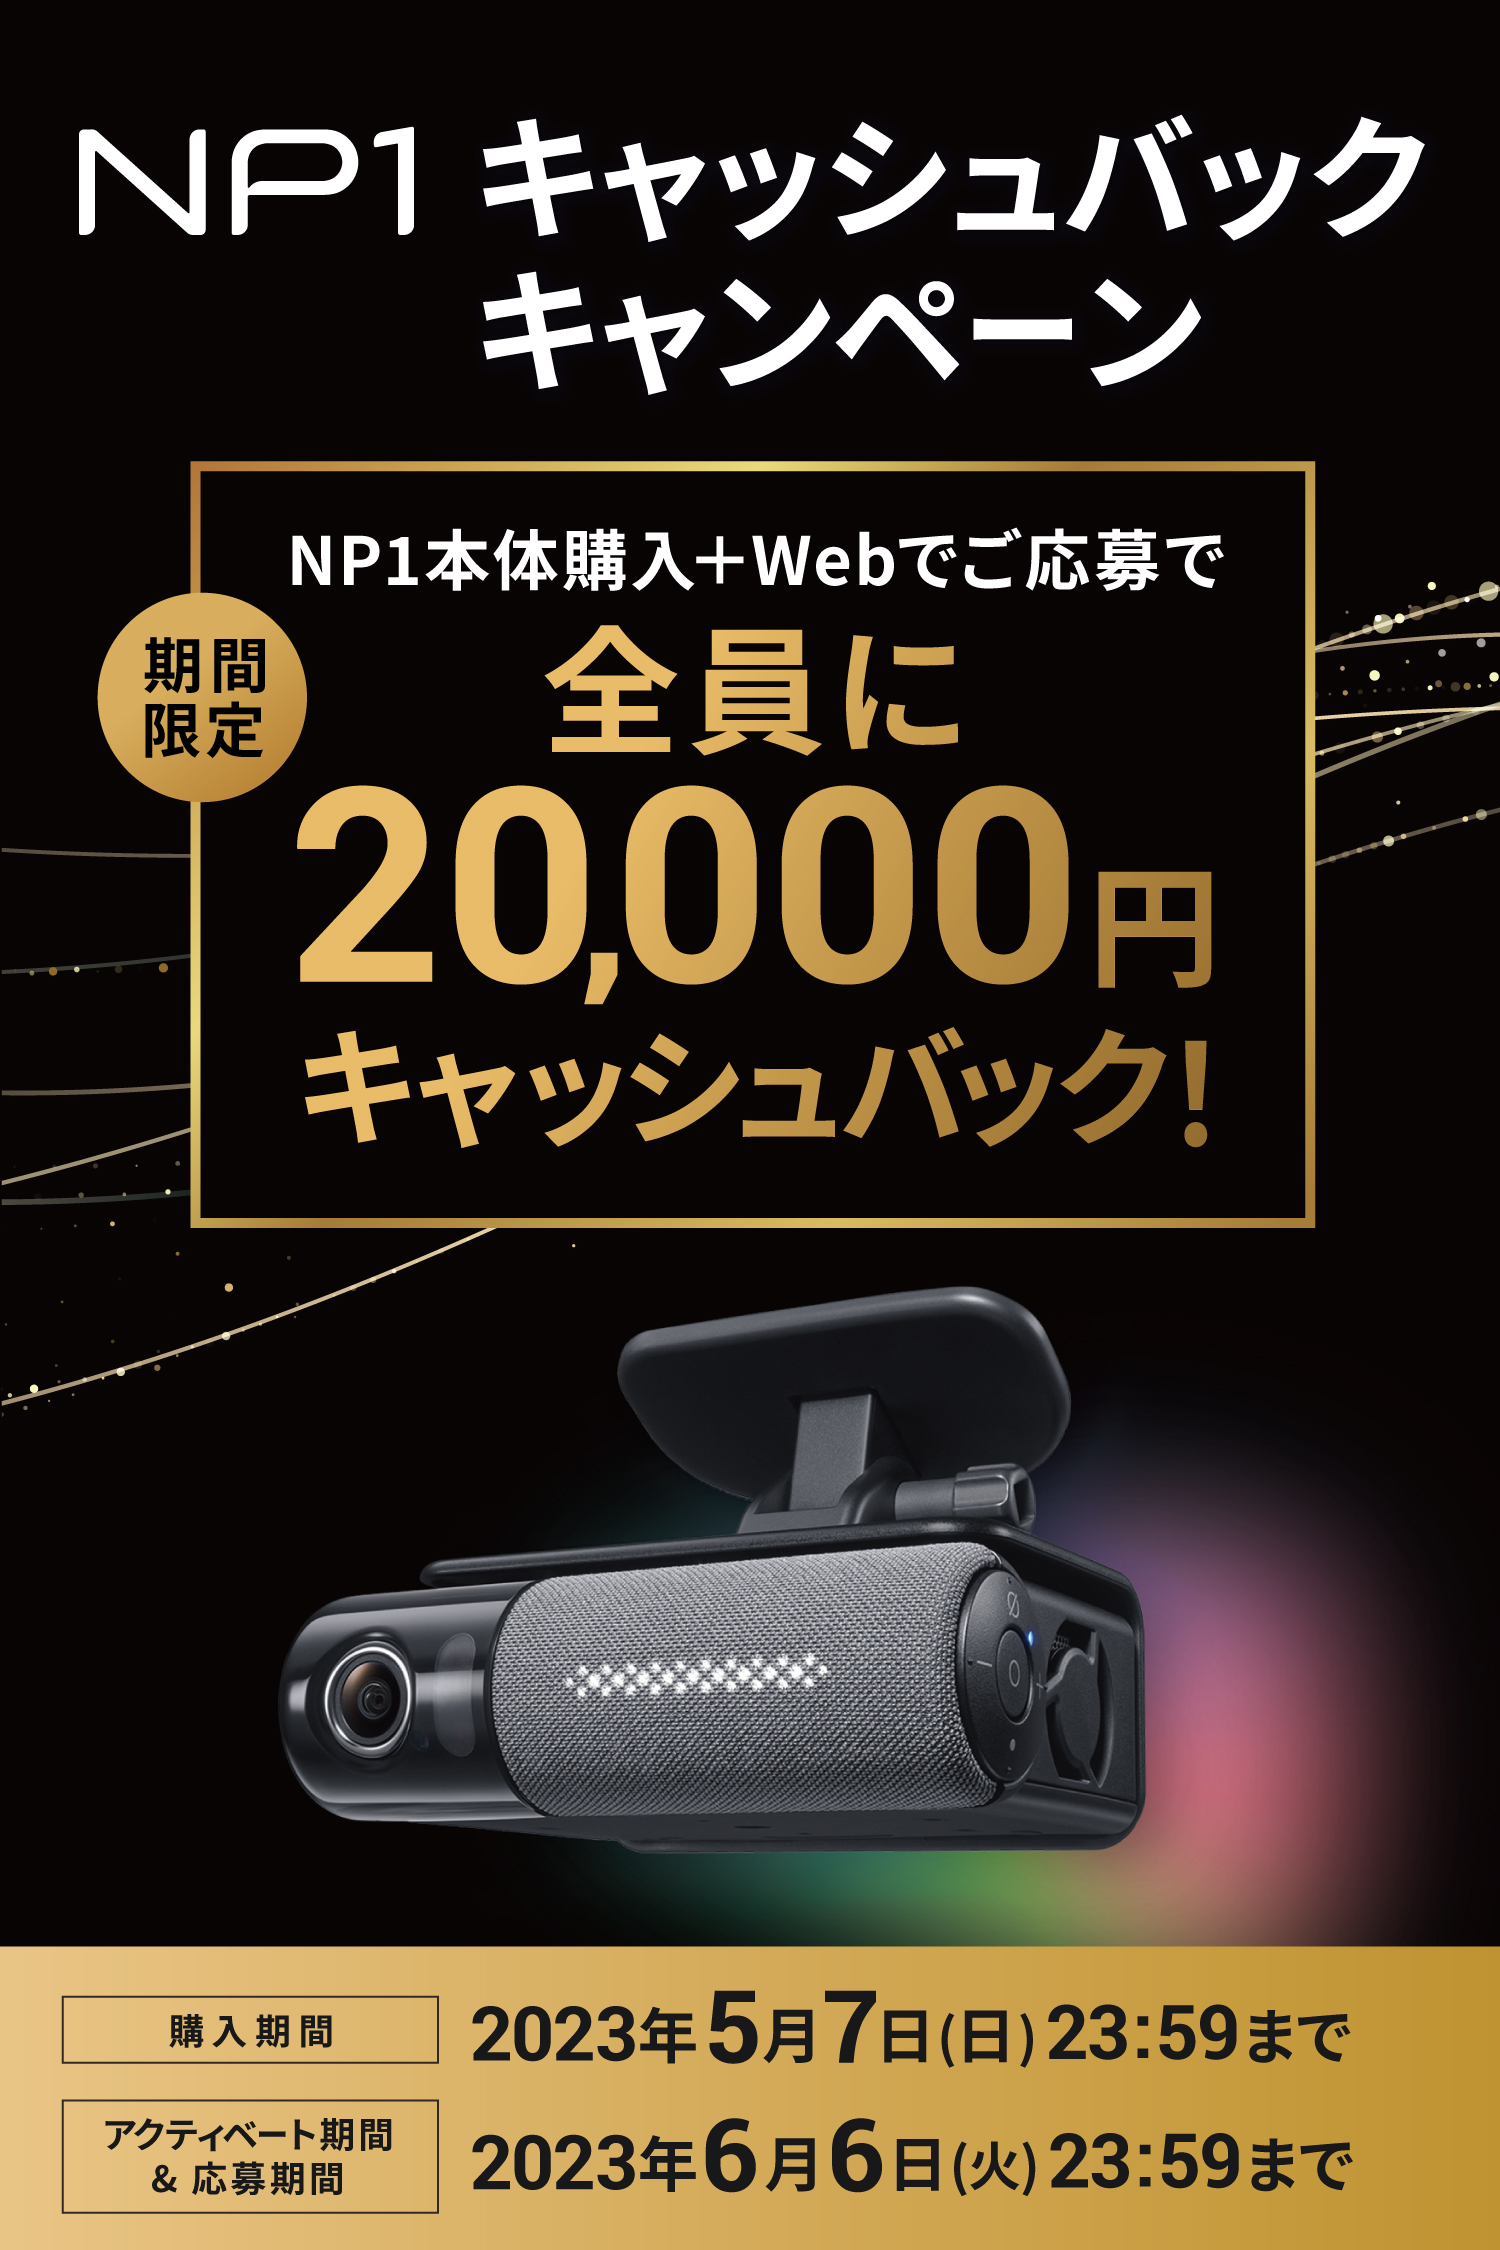 NP1キャッシュバックキャンペーン NP1本体購入+Webでご応募え全員に20,000円キャッシュバック！